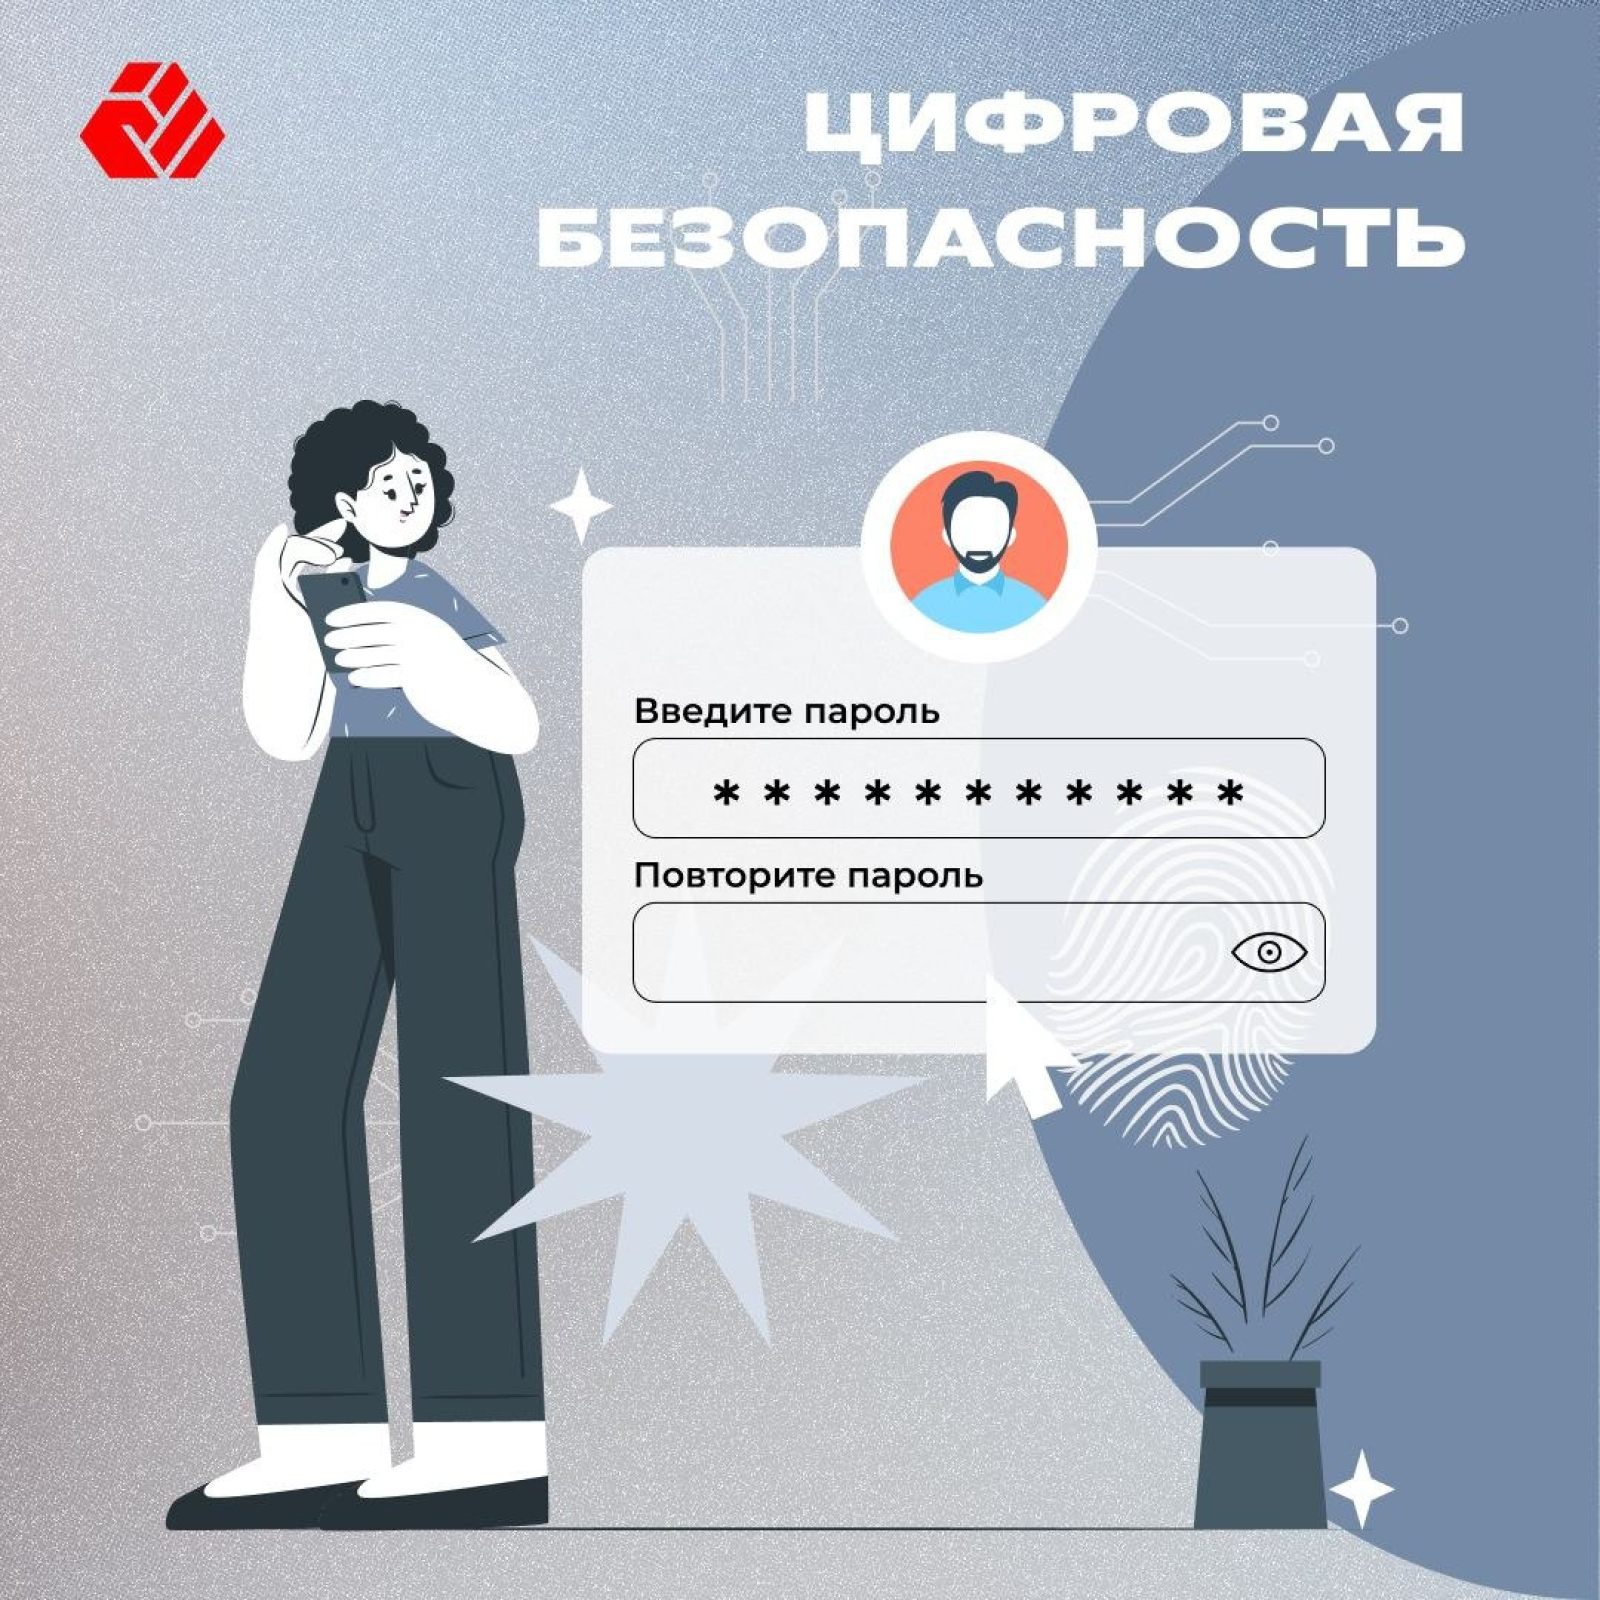 Цифровая безопасность - одно из важнейших правил жизни в сегодняшней Беларуси